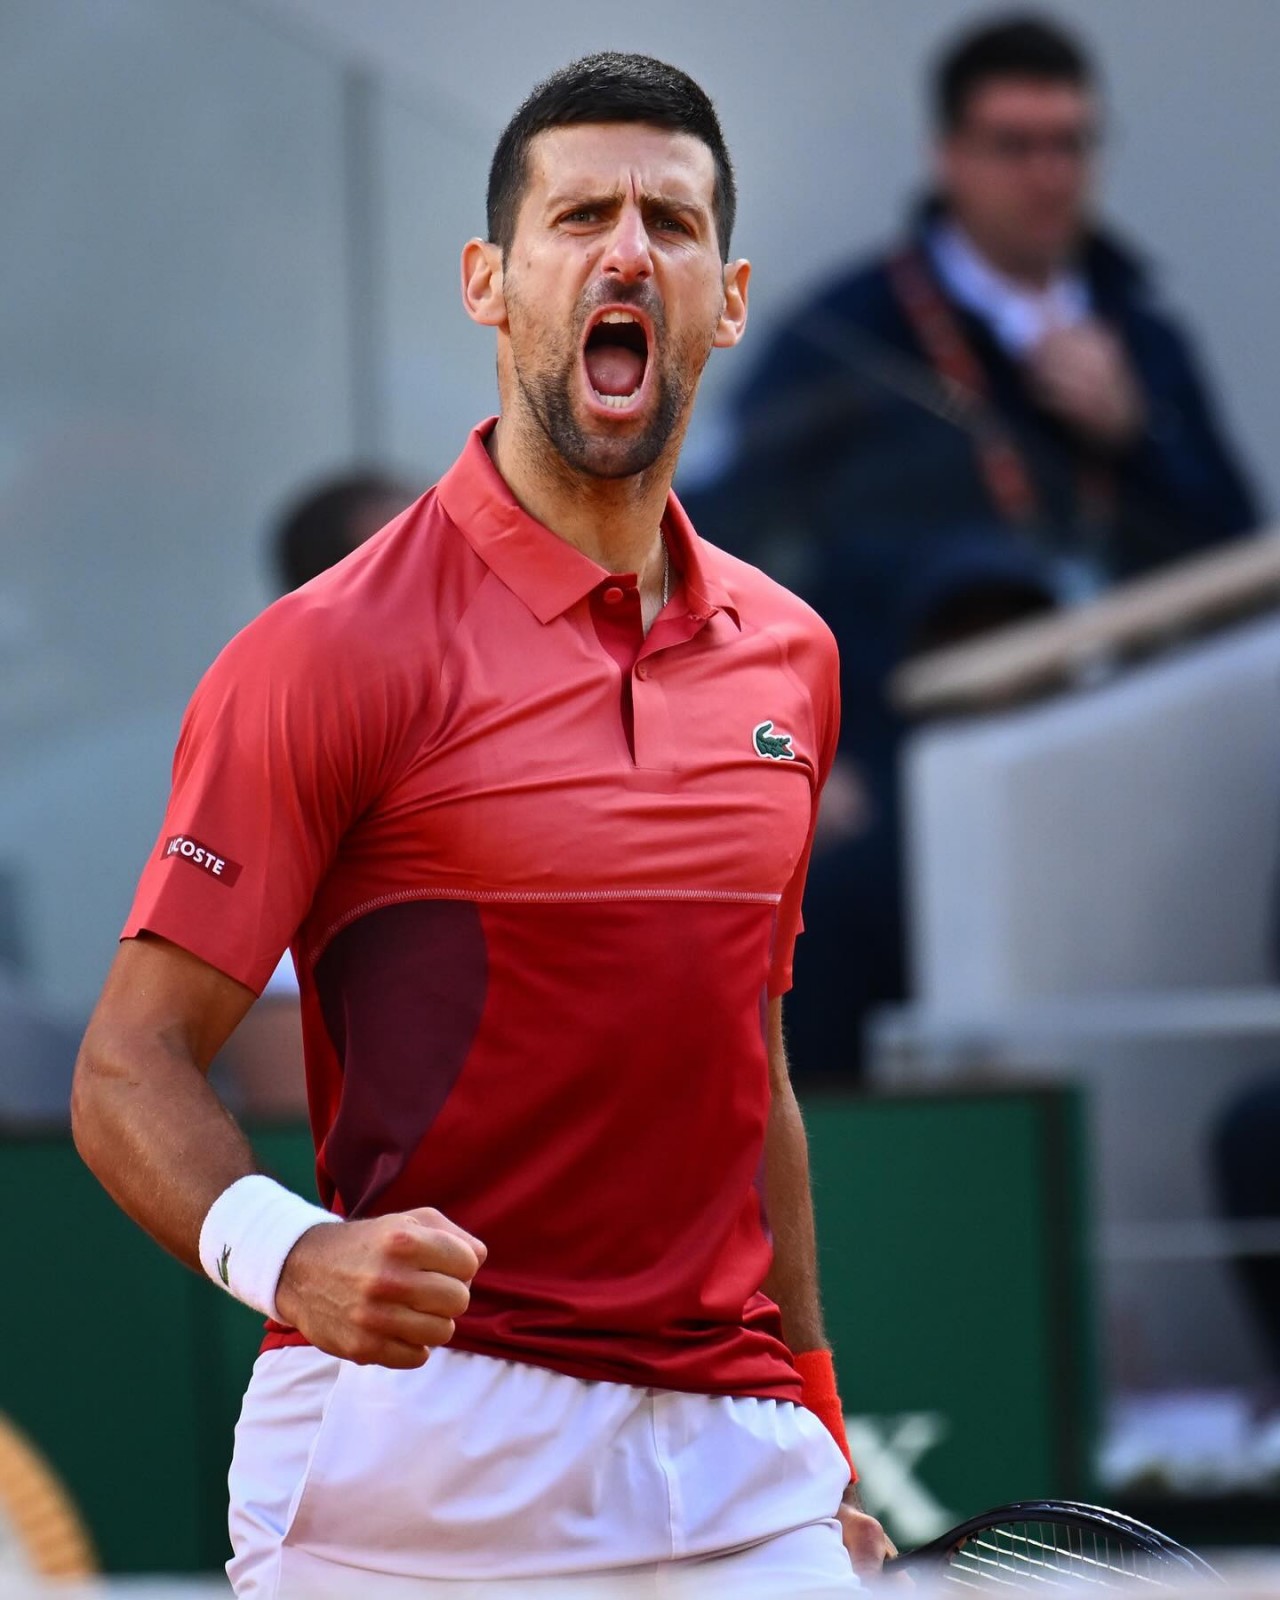 Novak Djokovic khởi đầu trận đấu ở vòng 4 không thể dễ dàng hơn khi thắng Francisco Cerundolo với tỷ số 6-1 trong set 1. (Nguồn: Roland Garros)